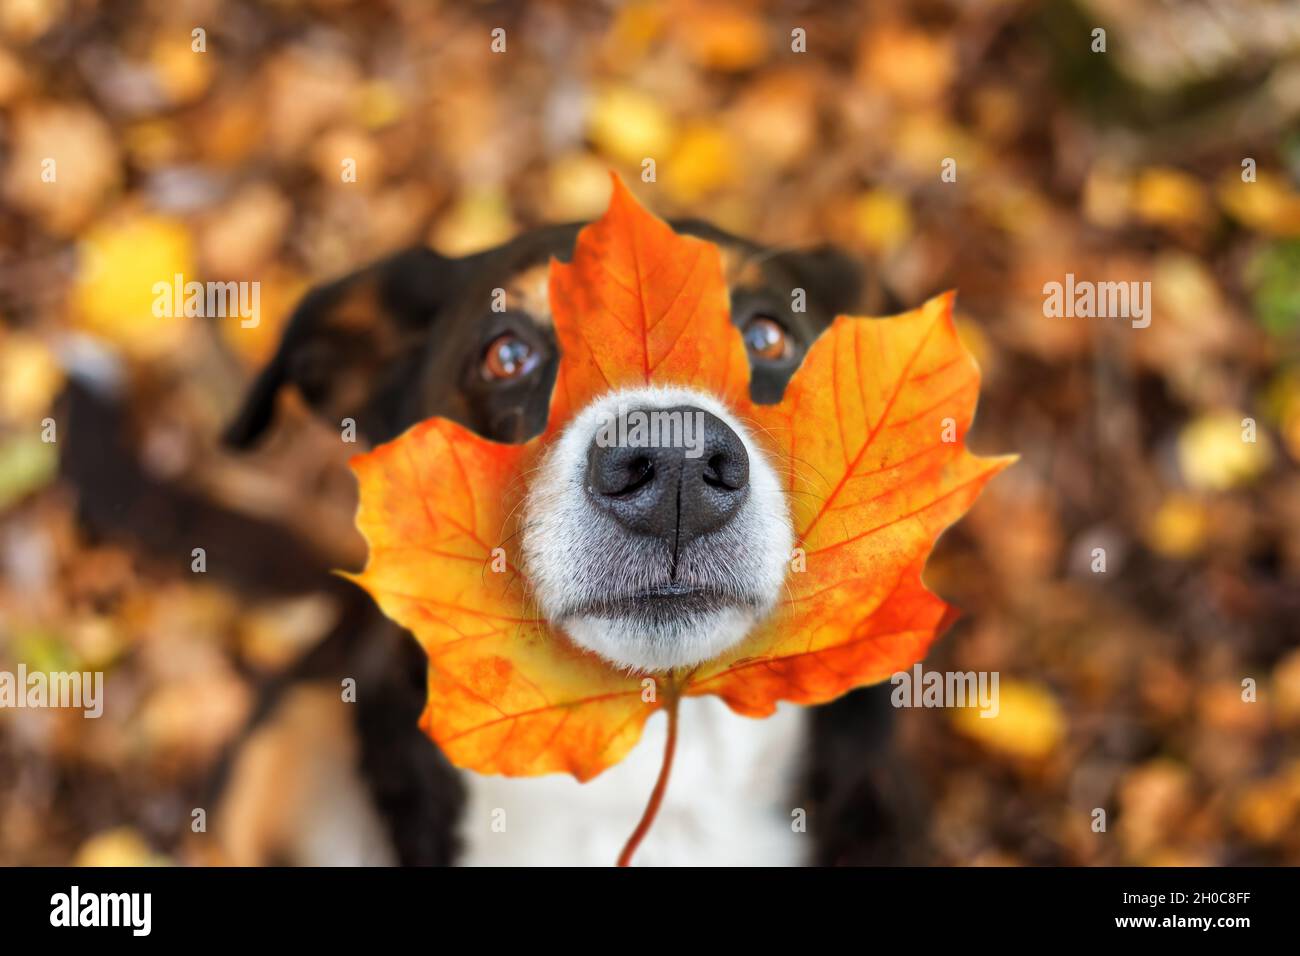 Cane con foglia sul naso seduto in foglie nel parco autunnale, appenzeller sennenhund Foto Stock